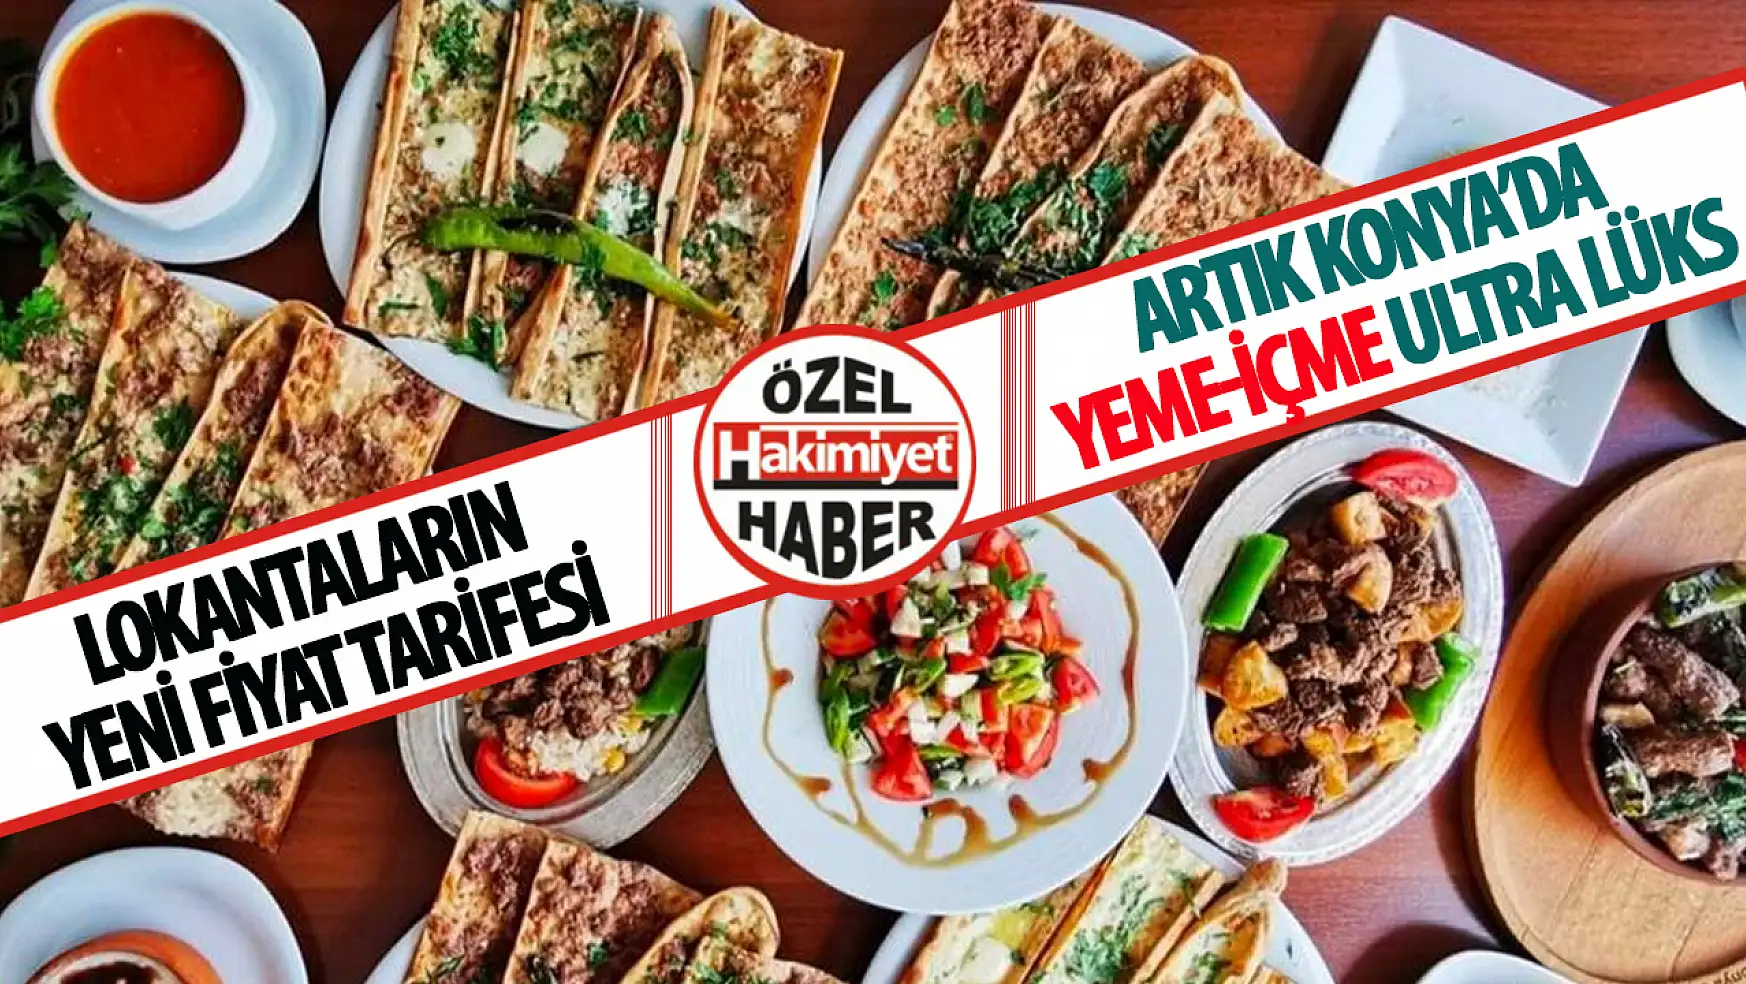 Konya'da Dışarıda Yemek-İçmek Artık Çok Lüks: İşte Yeni Lokanta Fiyatları